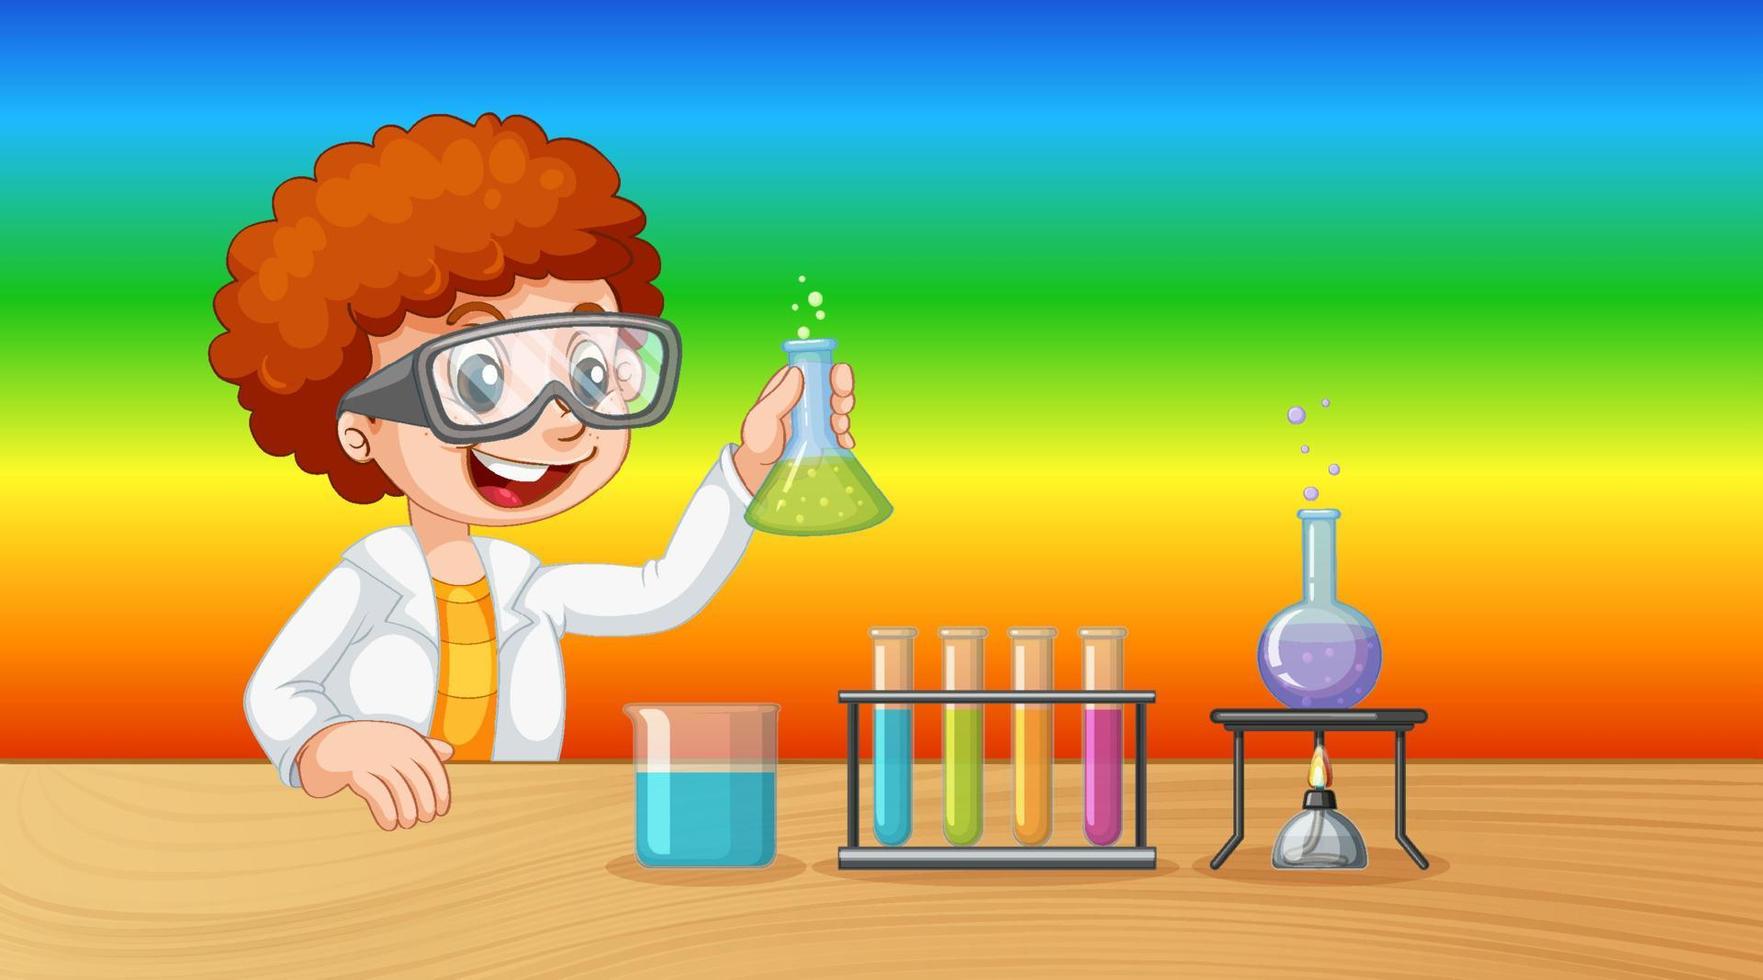 personaje de dibujos animados de niño científico sobre fondo degradado de arco iris vector